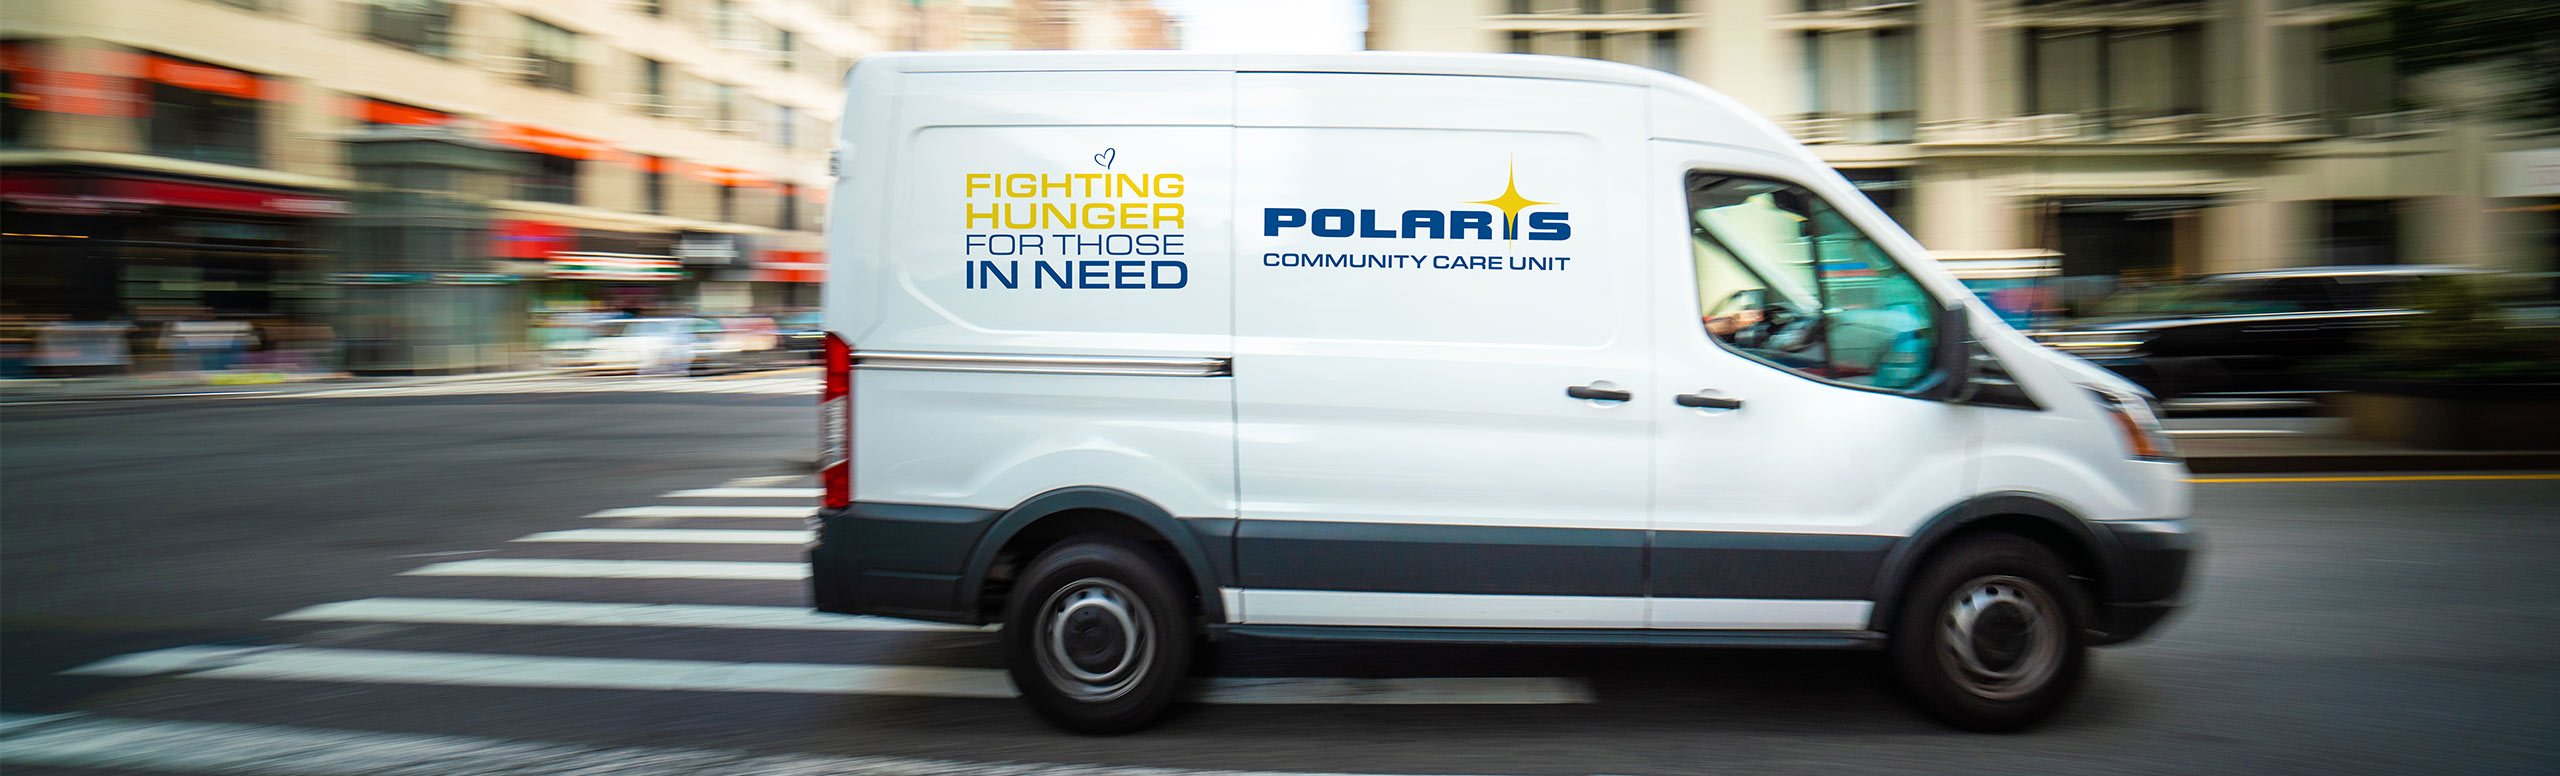 Le camion de l'unité de soins communautaires Polaris traverse les communautés de la région du Grand Toronto